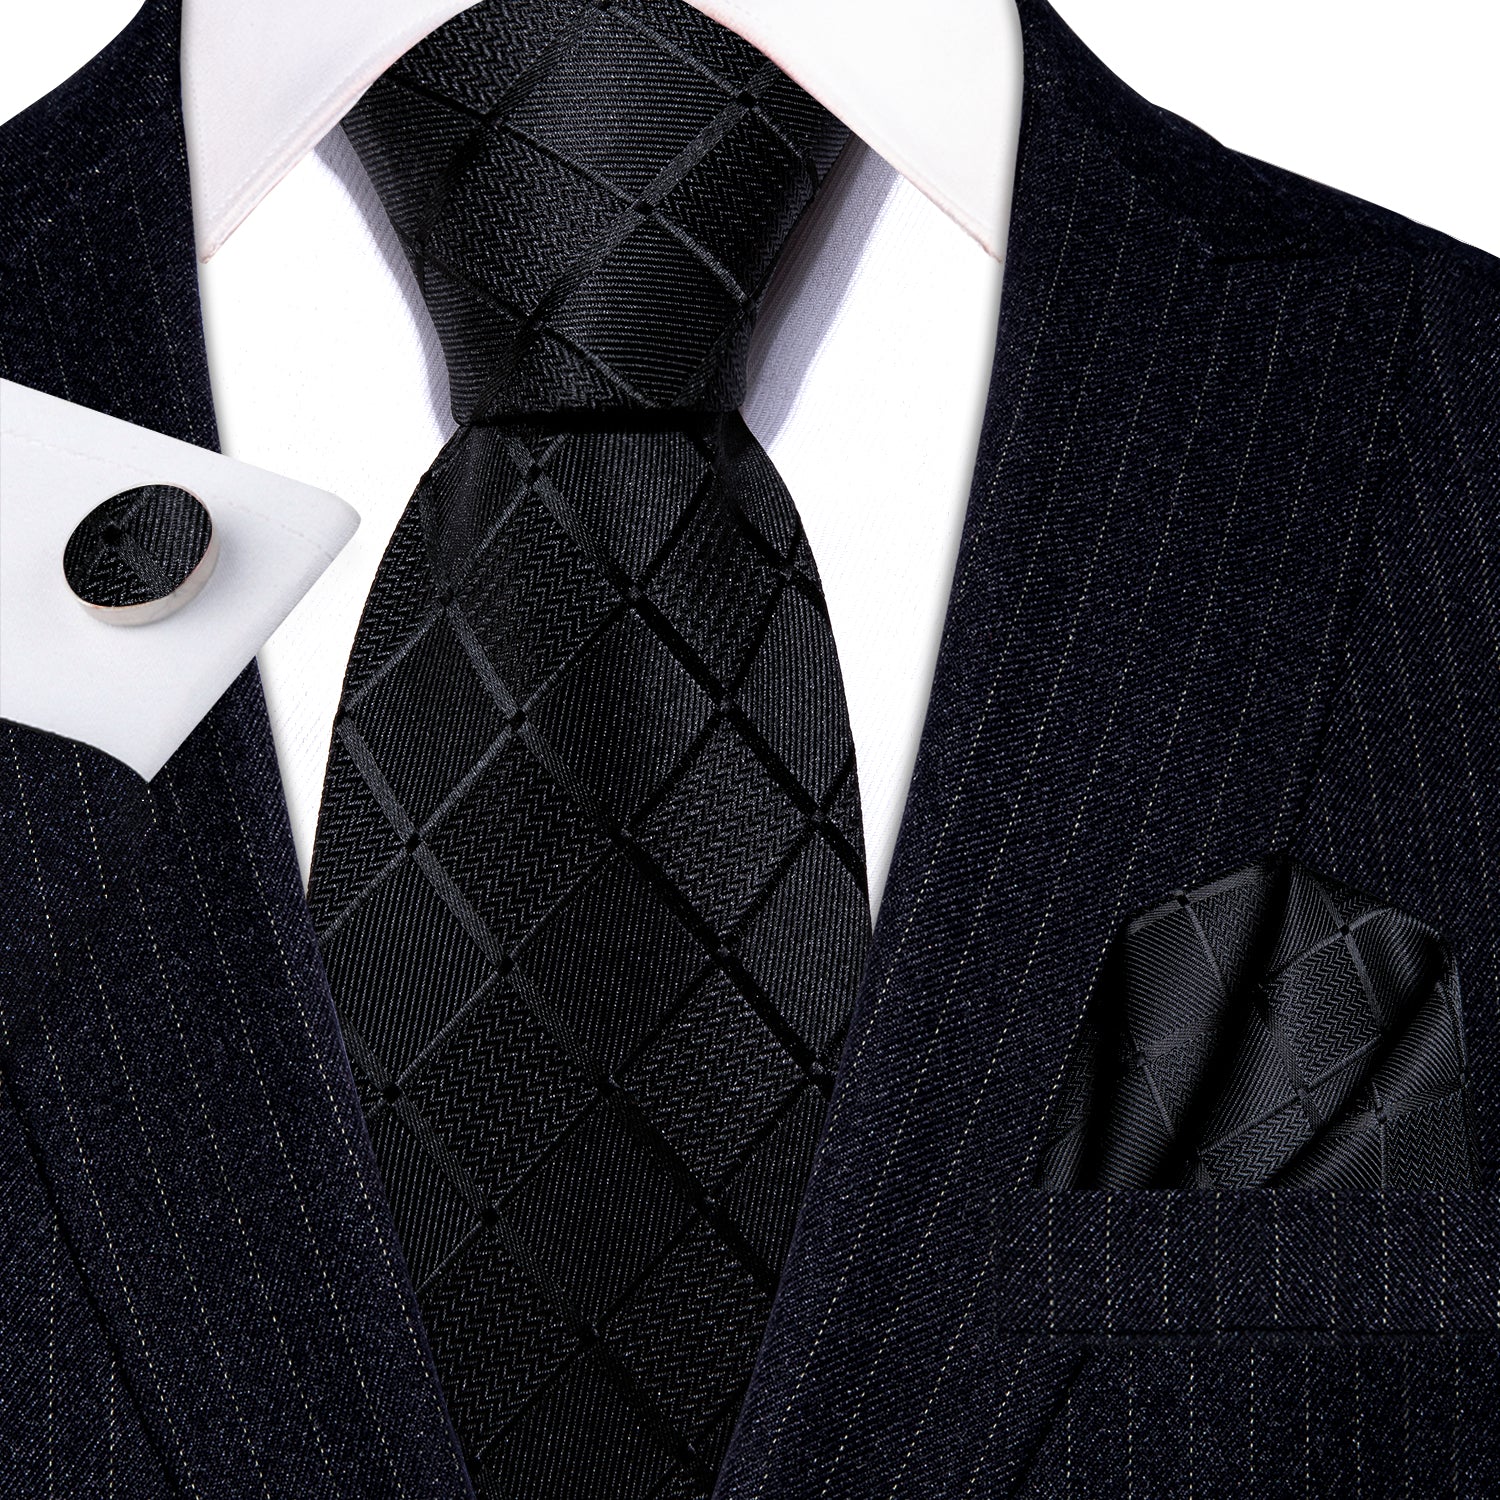 Pure Black Plaid Silk Men's Tie Set Tie Pocket Square Cufflinks Set